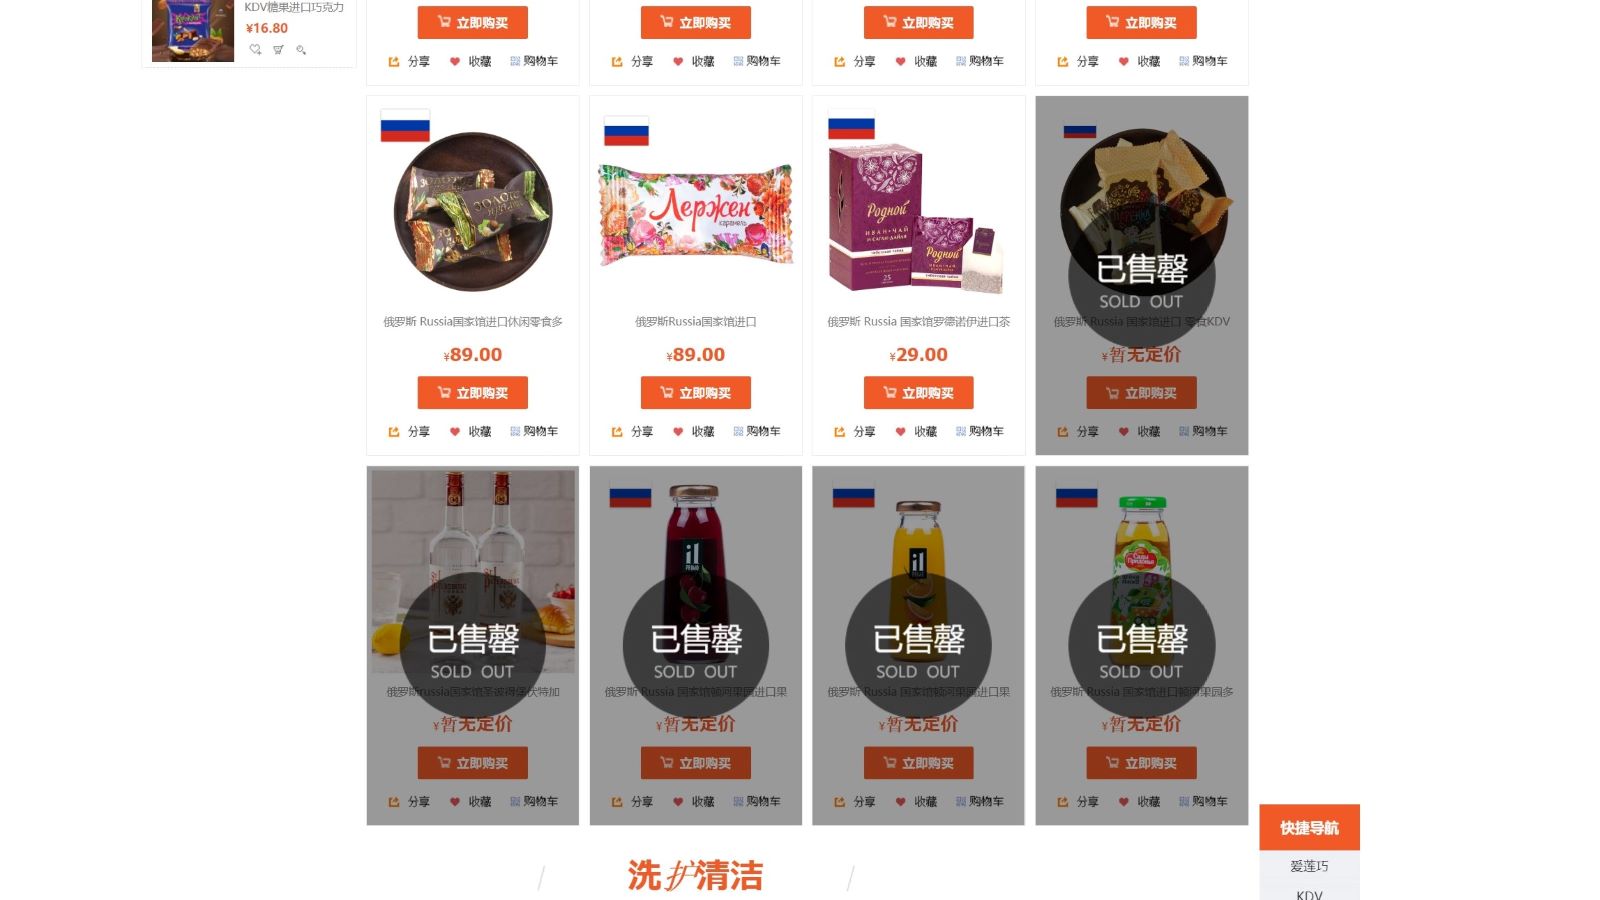 「ロシア商品を買って応援」 中国のネットショップで不可解な爆買いが起きている | 通販サイトは空っぽに